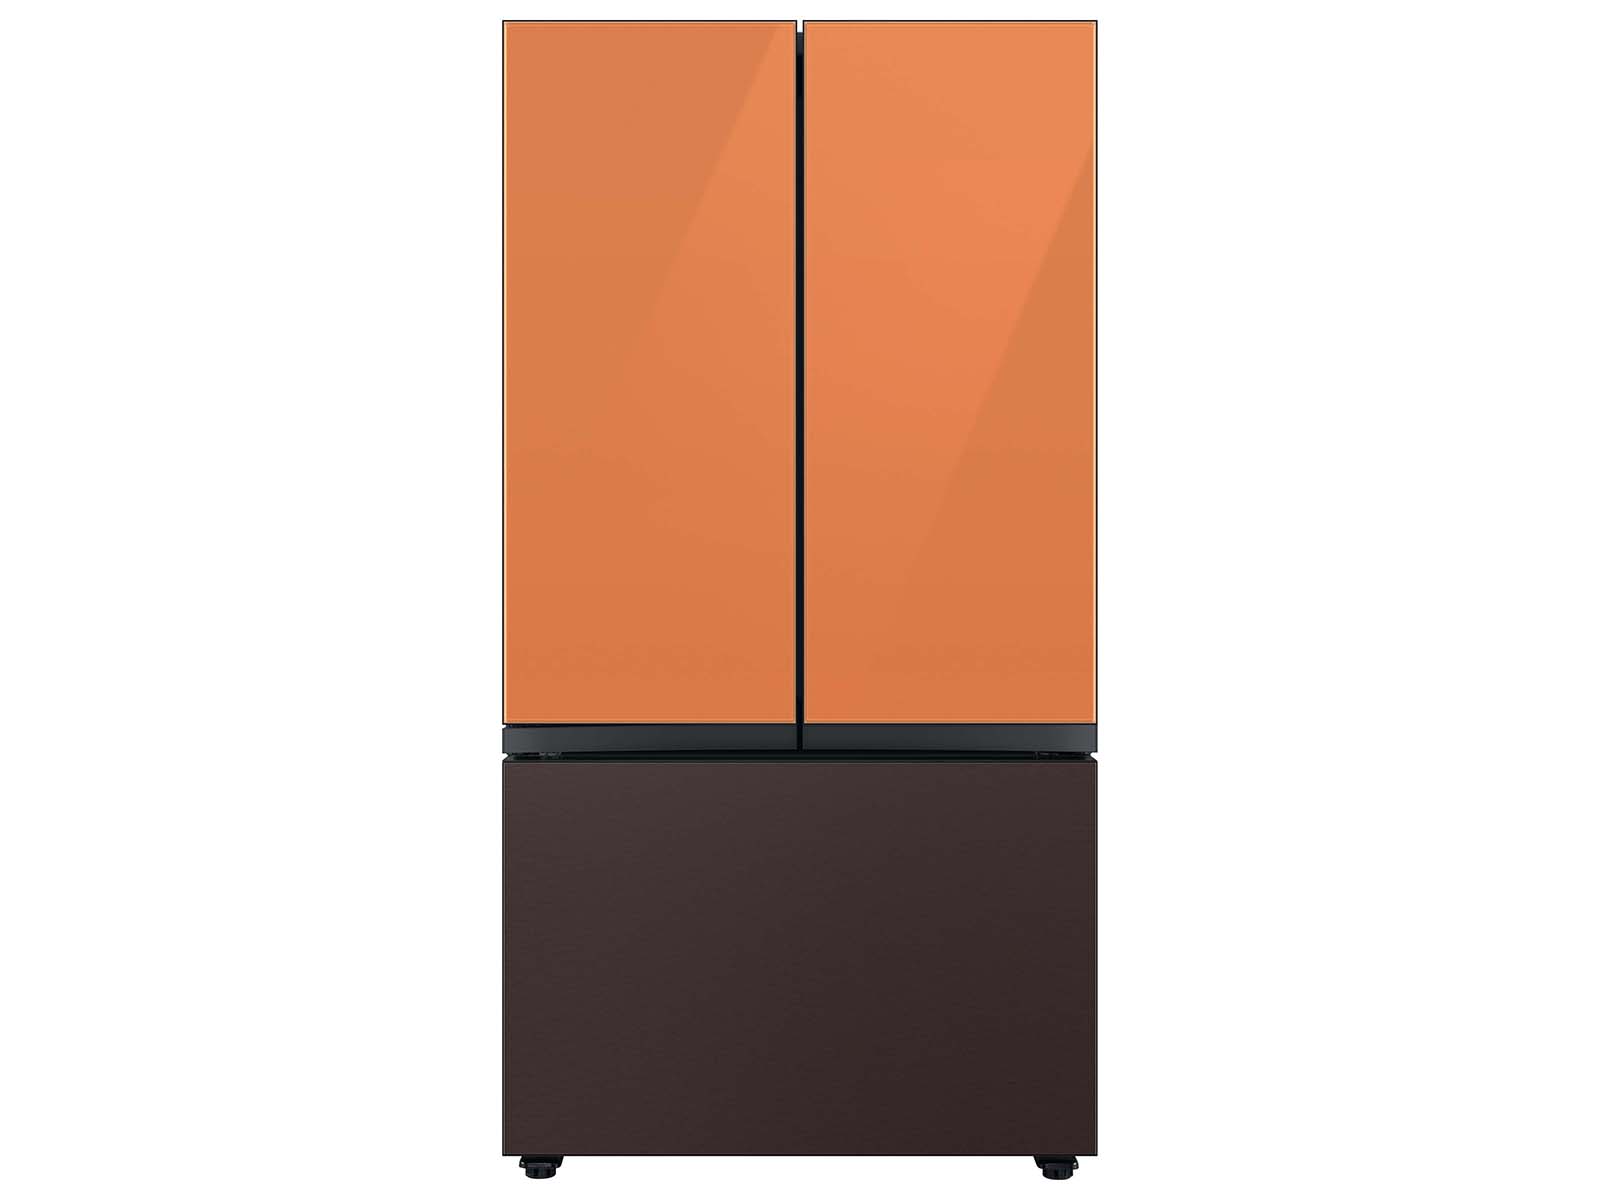 Thumbnail image of Bespoke 3-Door French Door Refrigerator Panel in Tuscan Steel - Bottom Panel